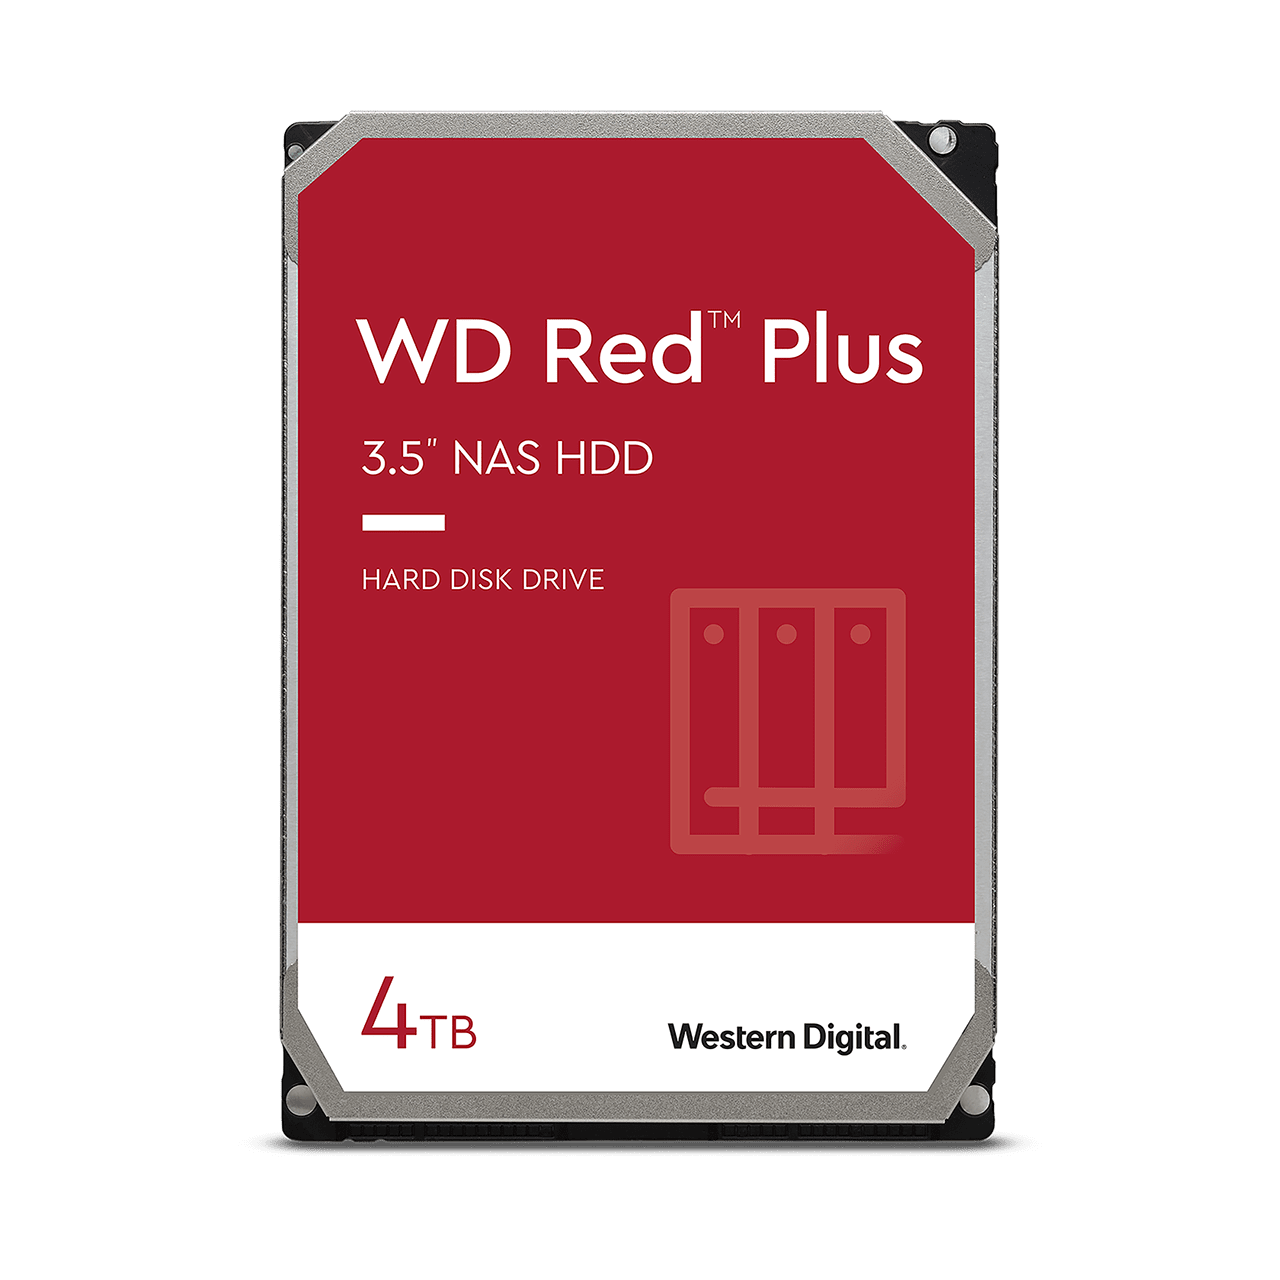 wd-red-plus-sata-3-5-hdd-4tb.thumb.1280.1280